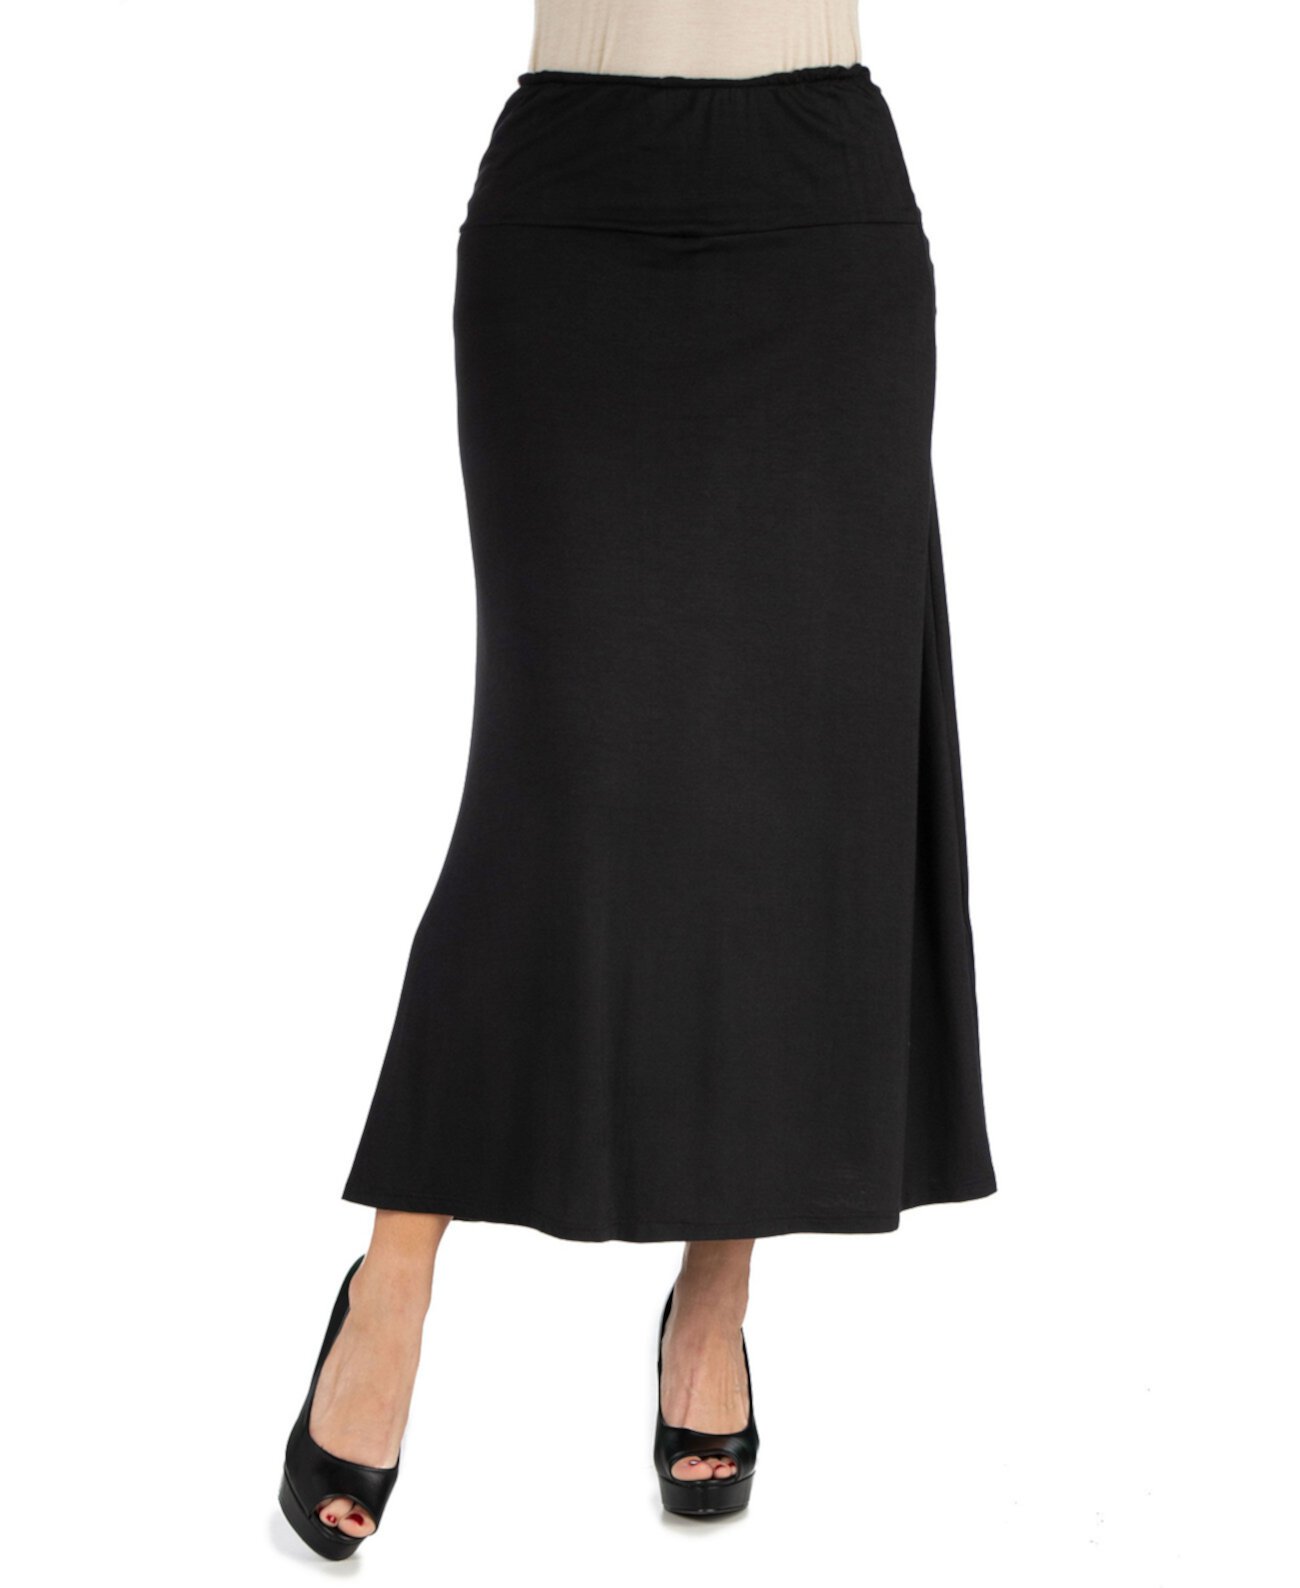 Женская макси-юбка с эластичной резинкой на талии 24Seven Comfort